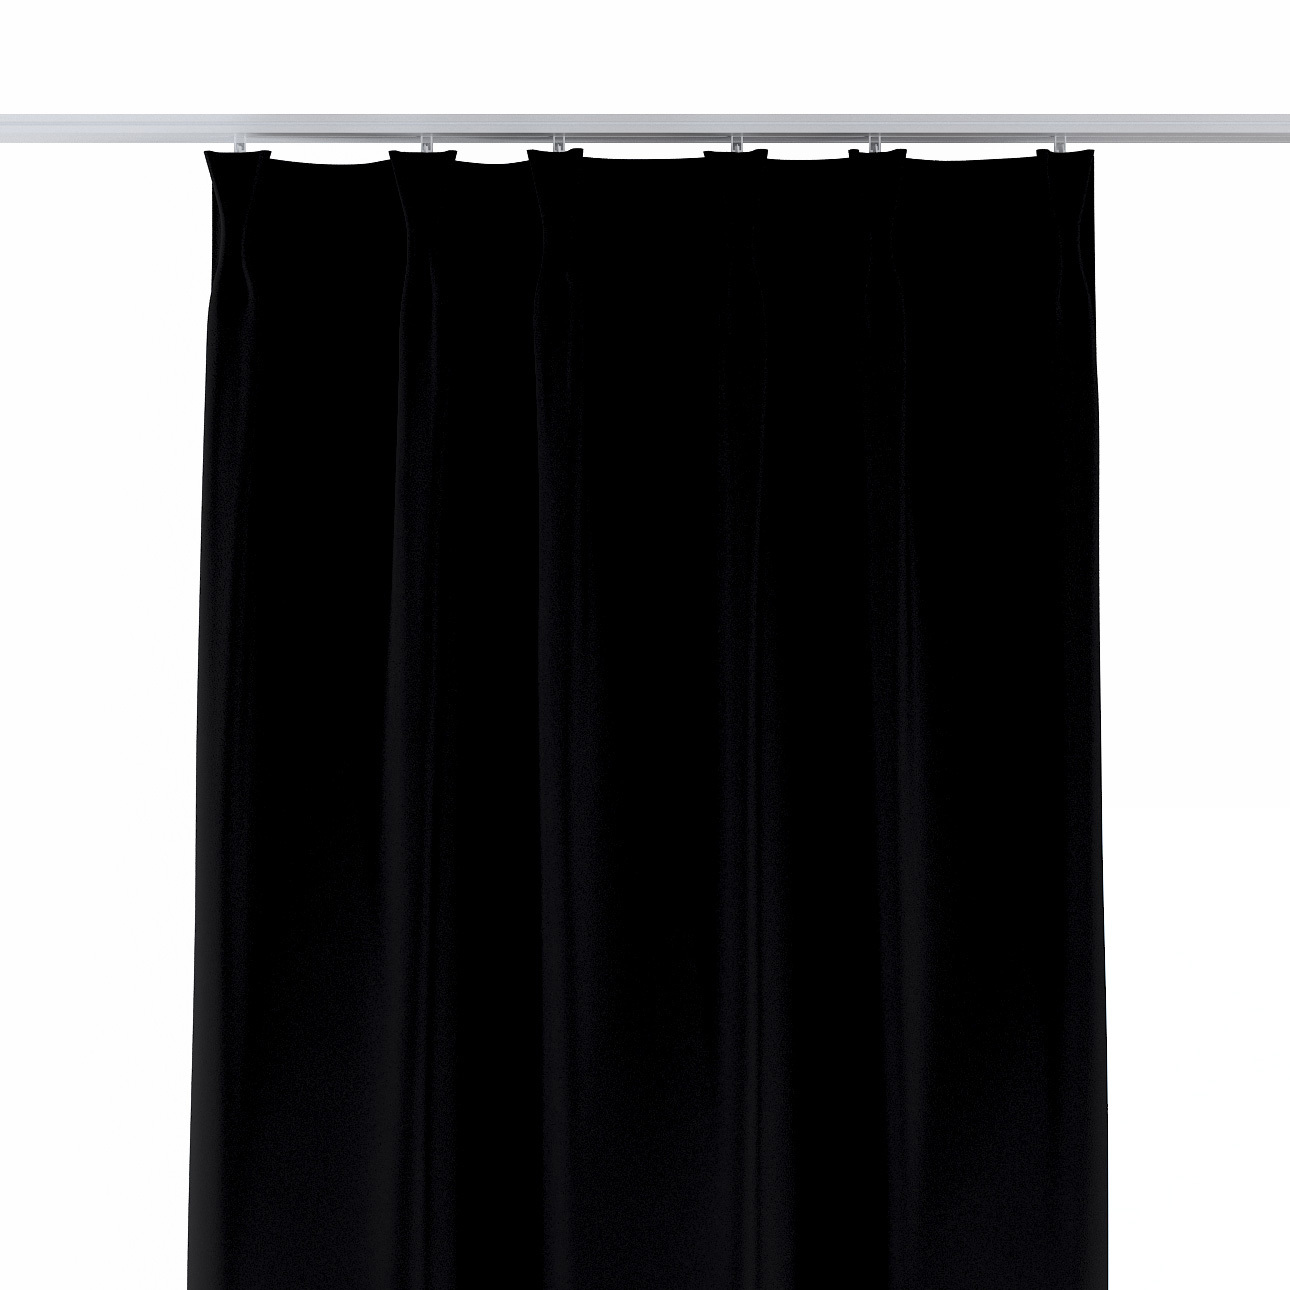 Vorhang mit flämischen 2-er Falten, schwarz, Blackout (verdunkelnd) (269-99 günstig online kaufen